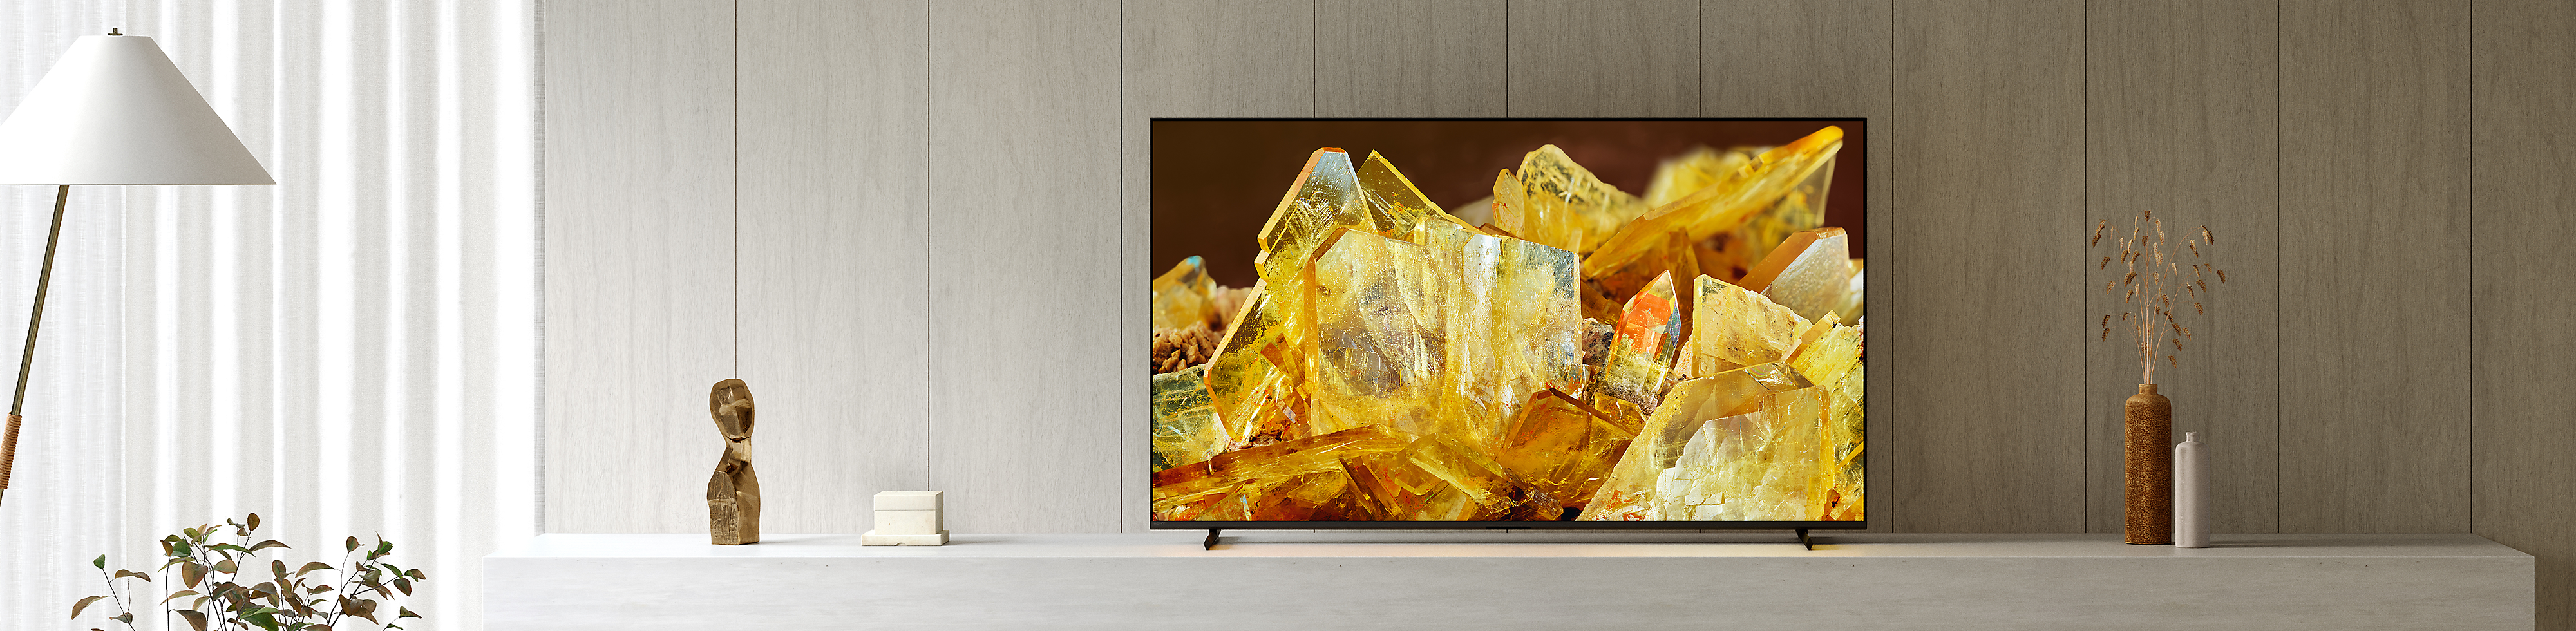 客廳中的 BRAVIA XR 電視，螢幕上顯示琥珀色水晶的特寫圖片